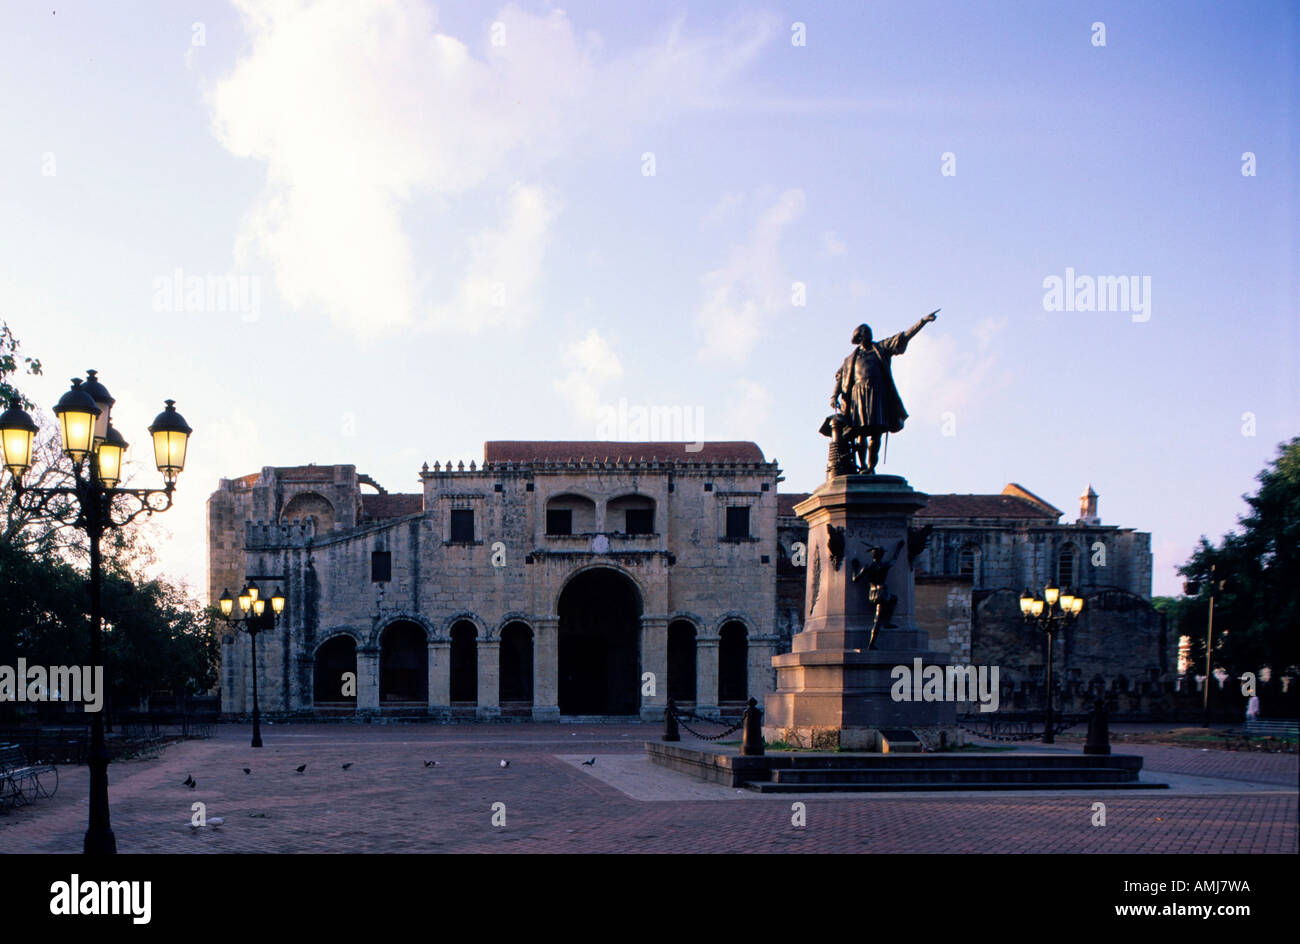 Dominikanische Republik, Santo Domingo, Plaza Colon, mit Kathedrale Santa Maria la Menor, Primada del America Stock Photo